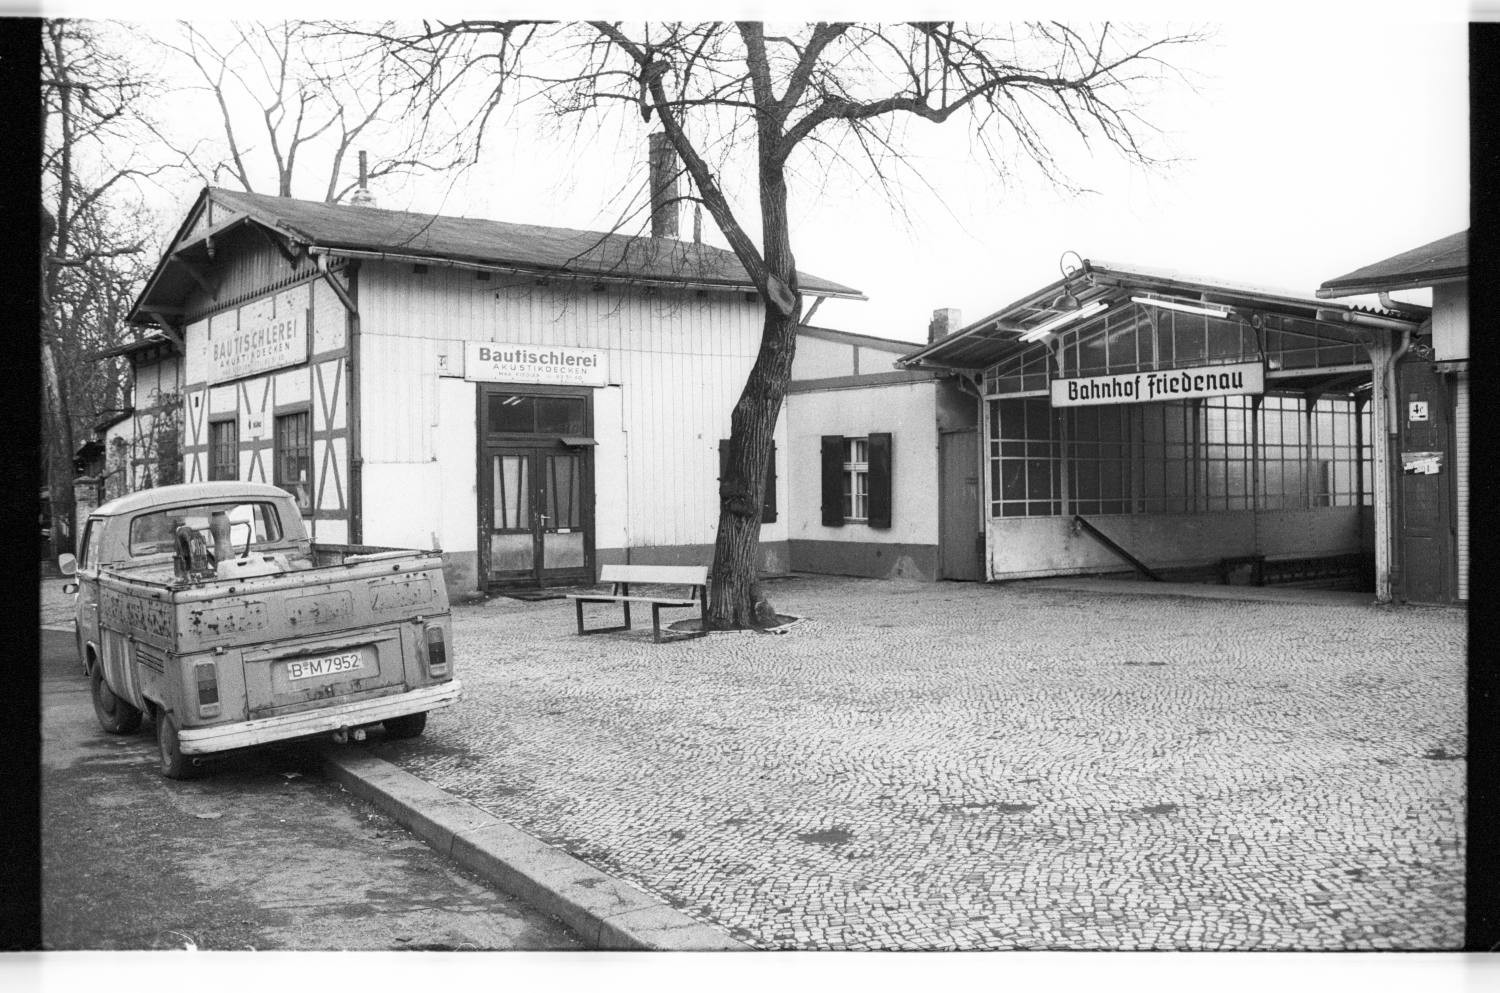 Kleinbildnegative: Bahnhof Friedenau, 1982 (Museen Tempelhof-Schöneberg/Jürgen Henschel RR-F)